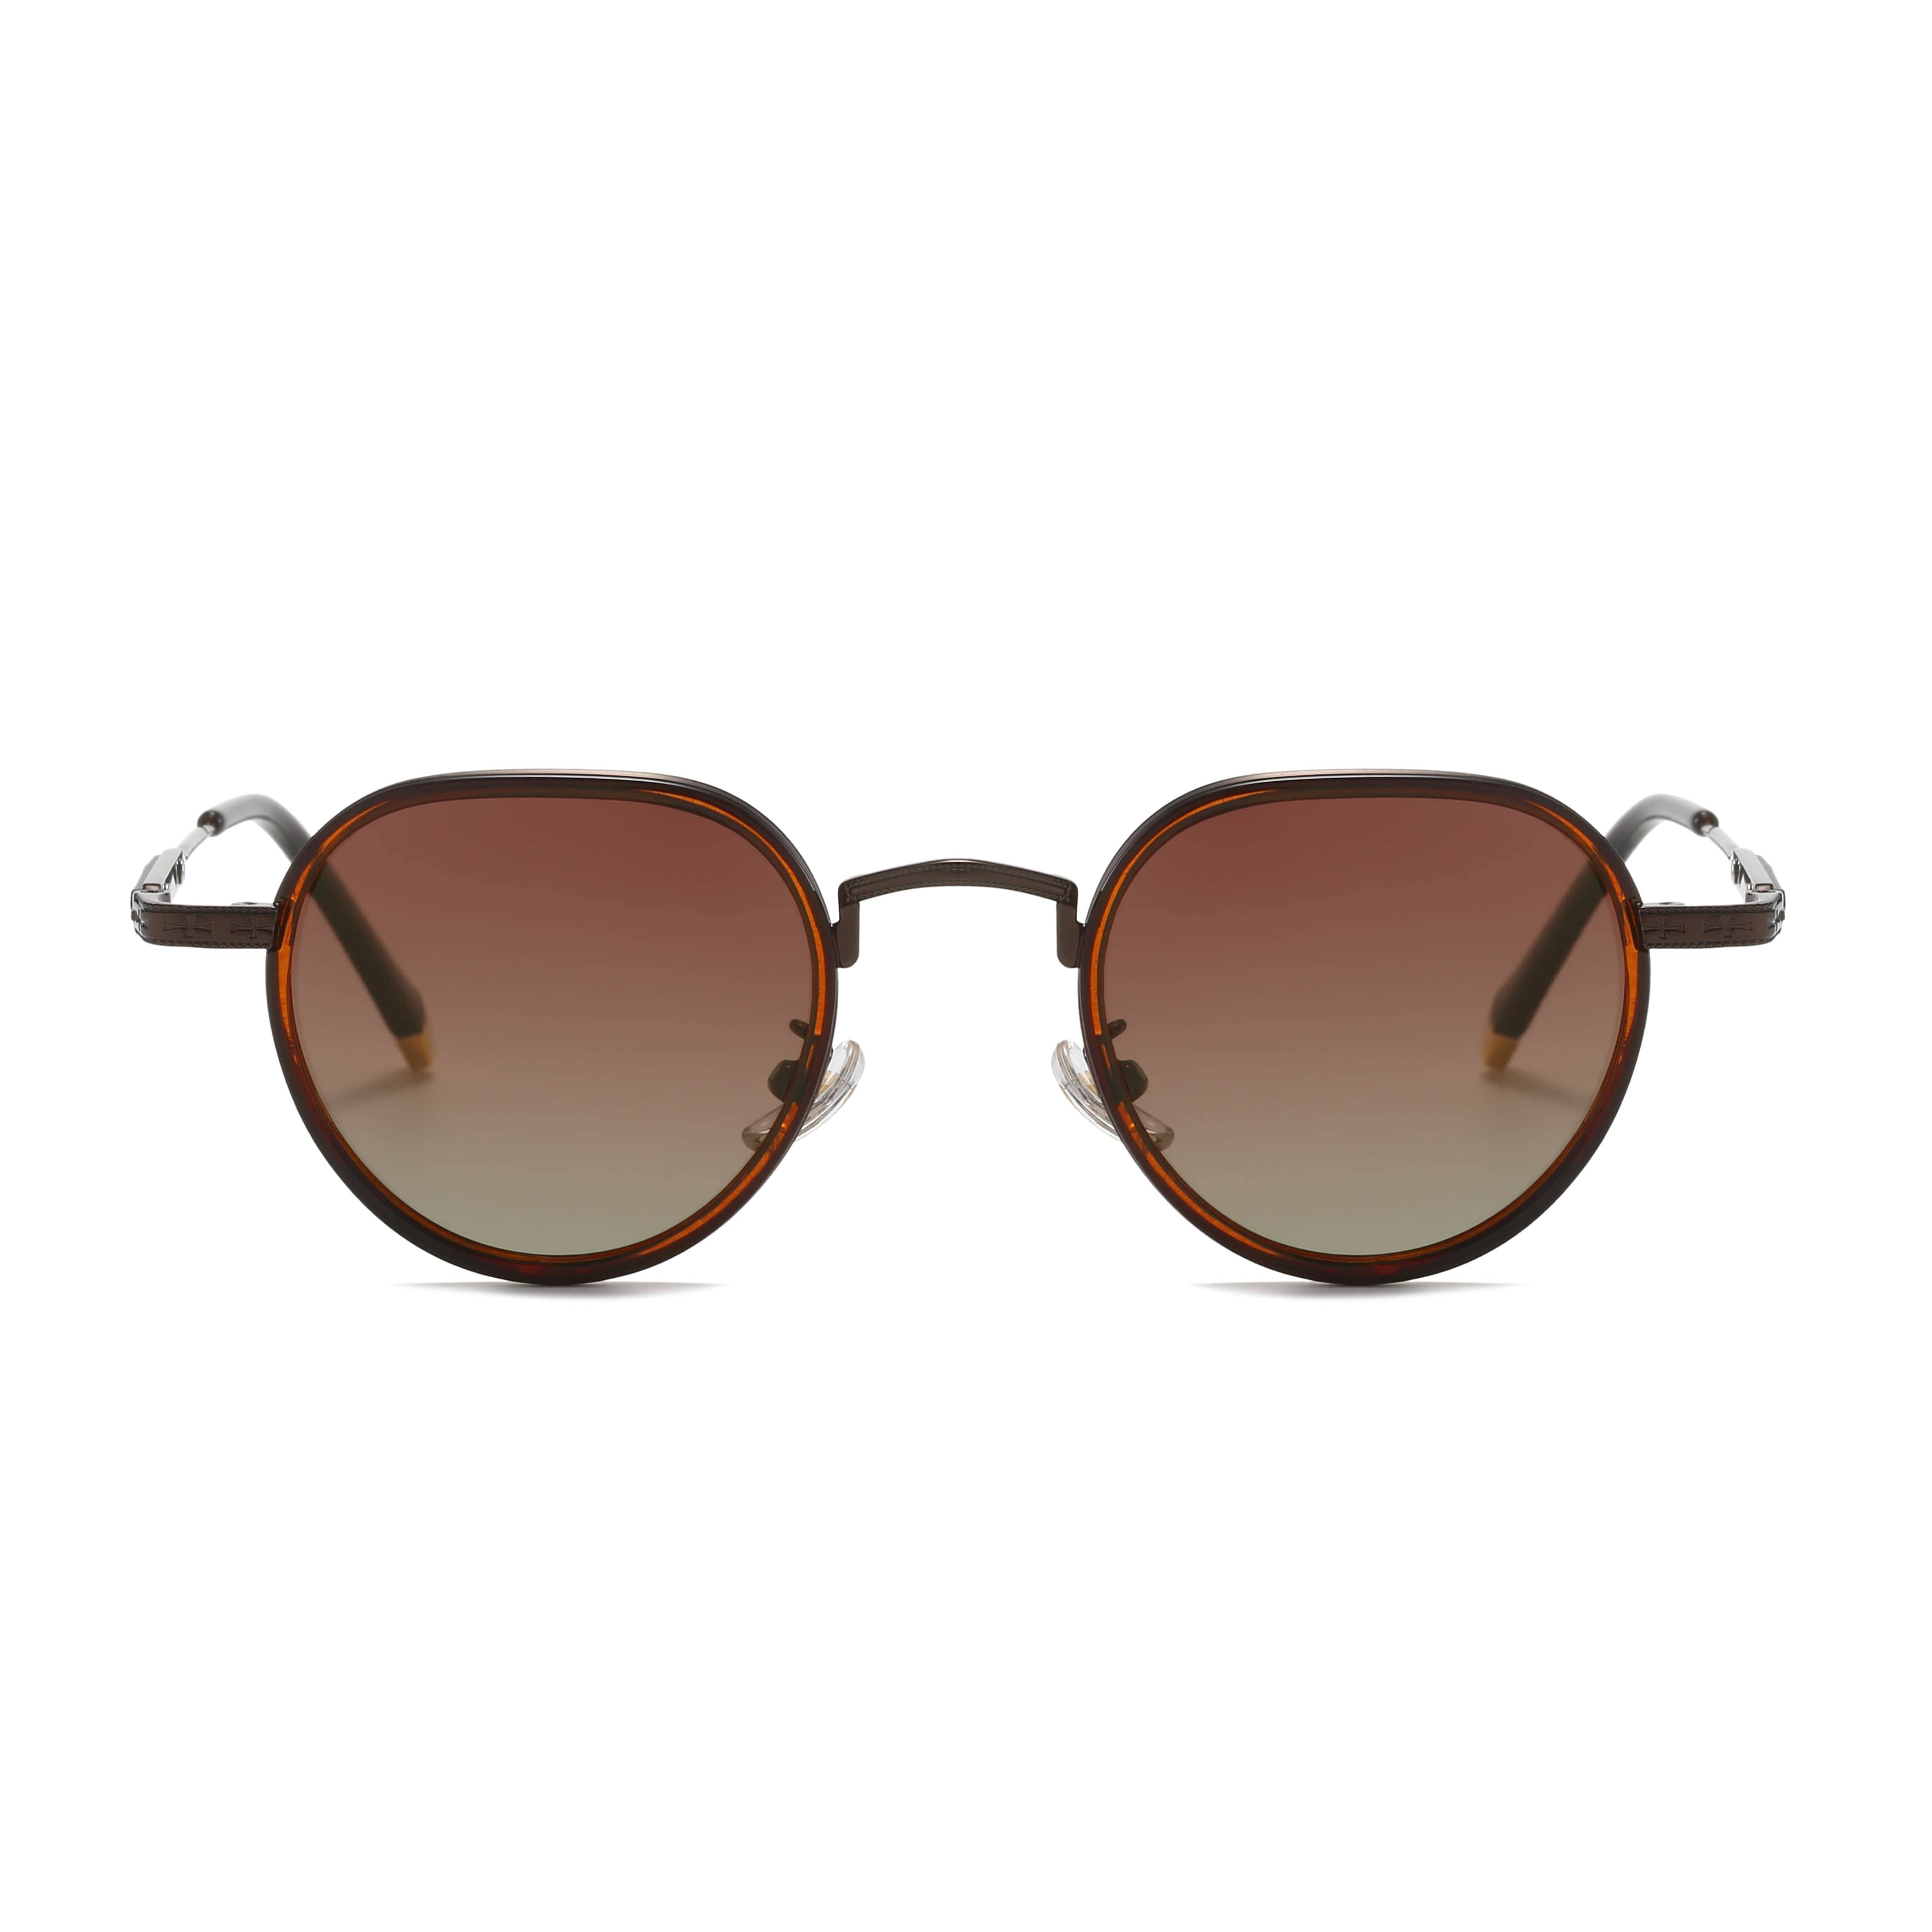 GIUSTIZIERI VECCHI Sunglasses Small / Light Gold/Brown LuxeLady